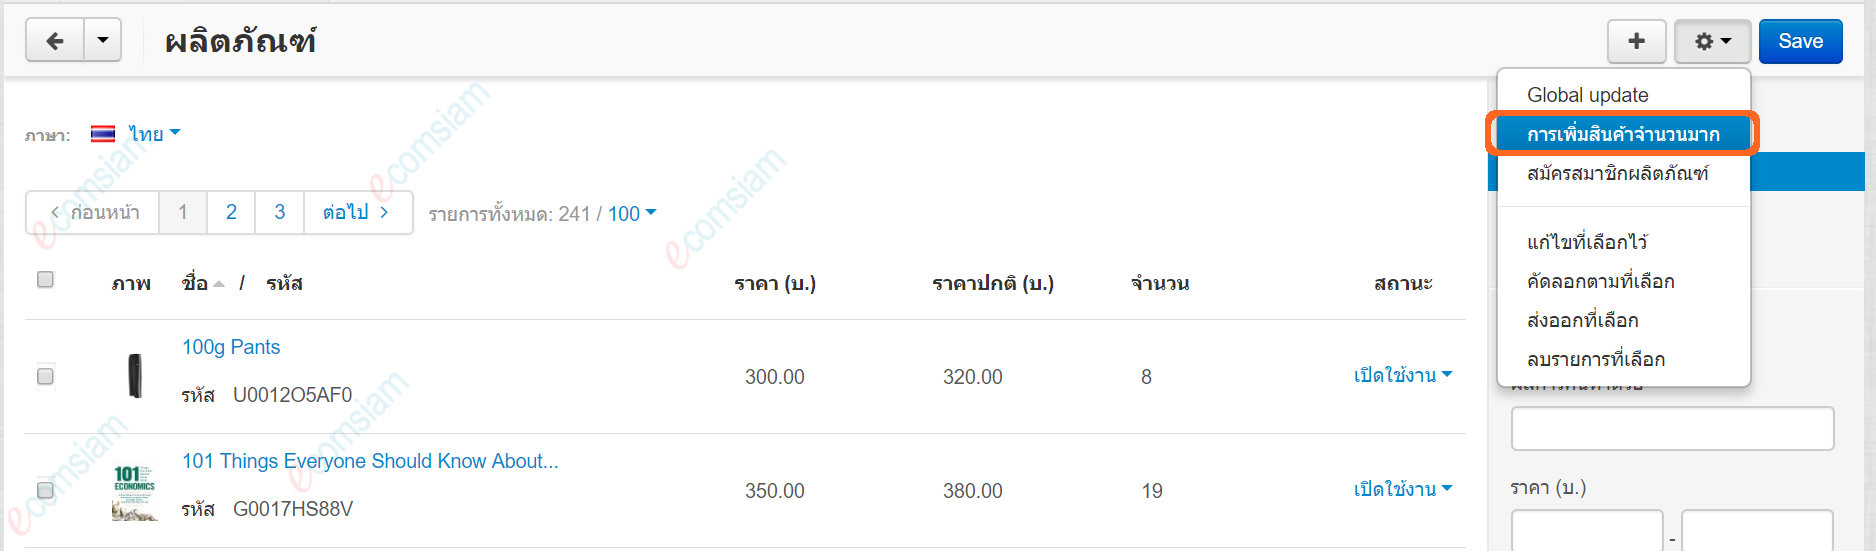 เว็บไซต์สำเร็จรูปไทย - คู่มือร้านออนไลน์ - ผลิตภัณฑ์ เพิ่มผลิตภัณฑ์หลายรายการ